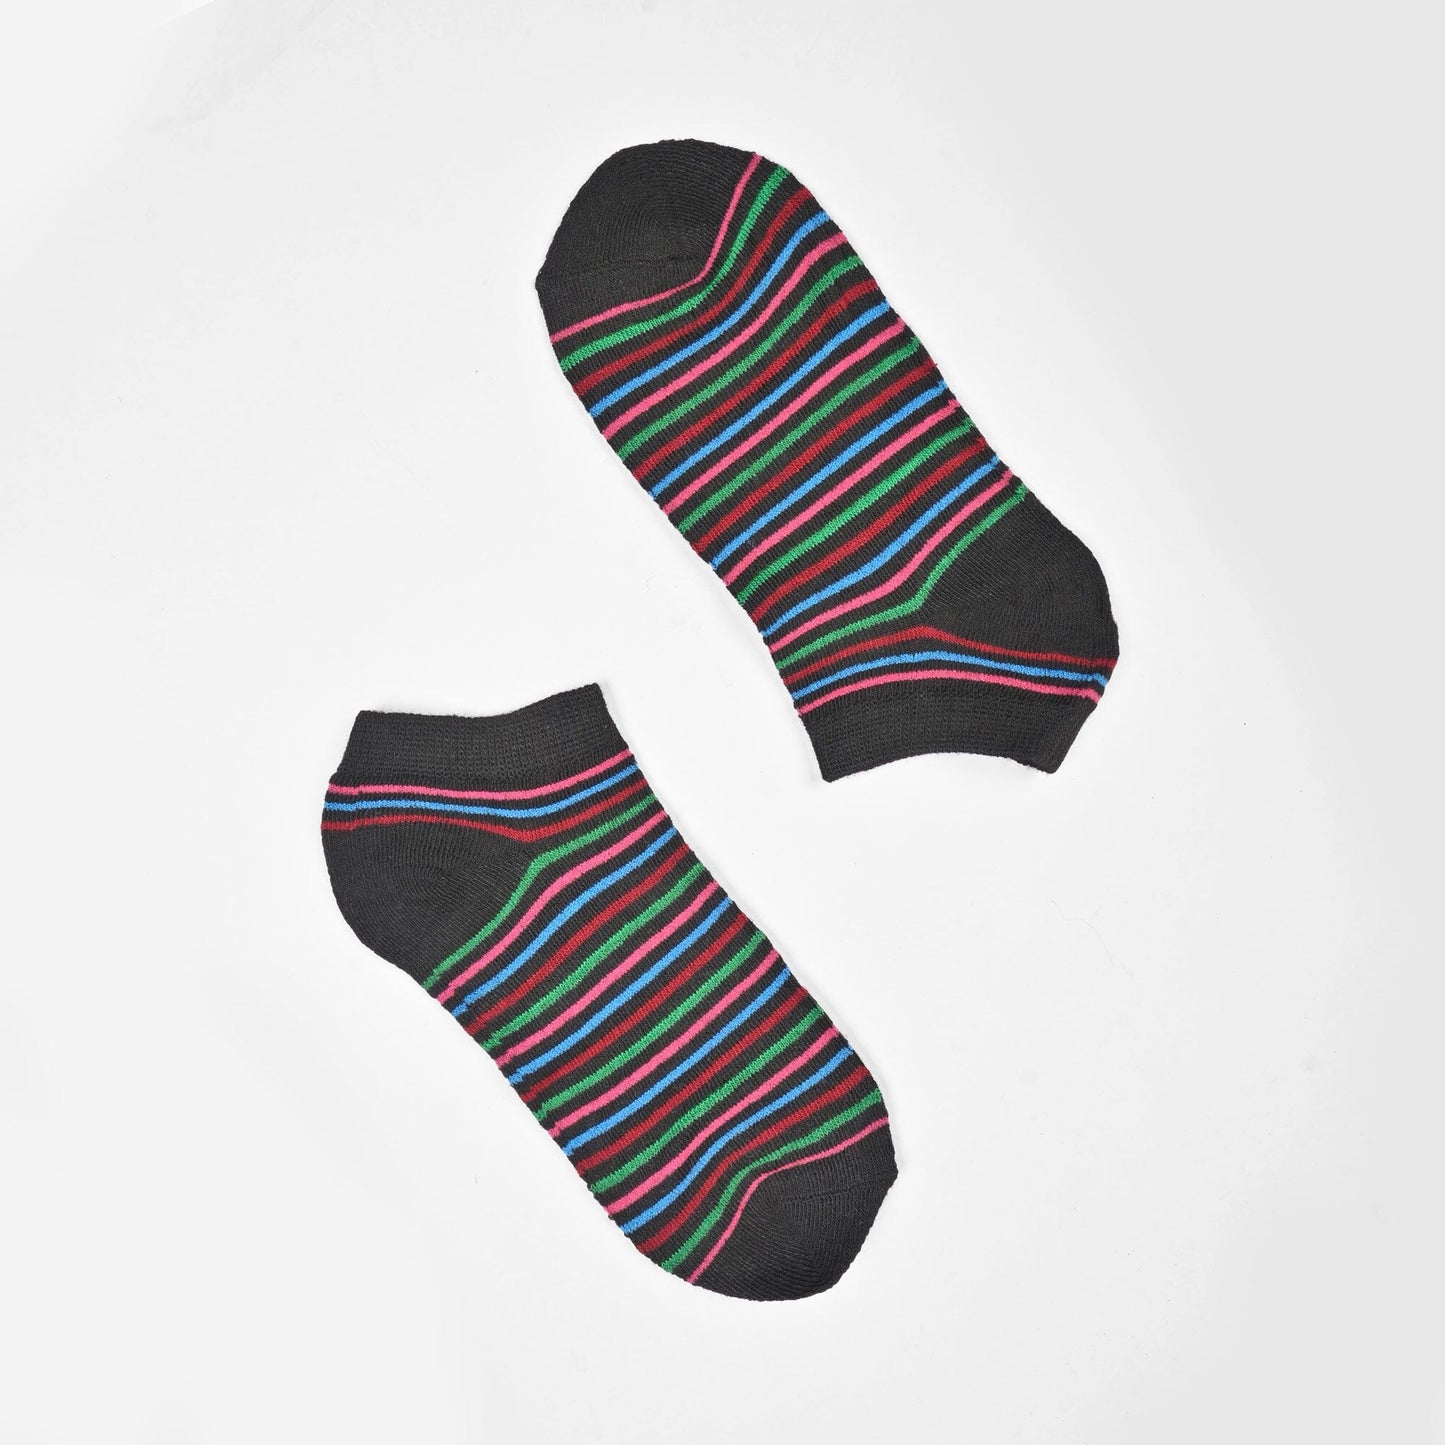 Rauma Women's Classic Anklet Socks Socks SRL Black D2 EUR 35-40